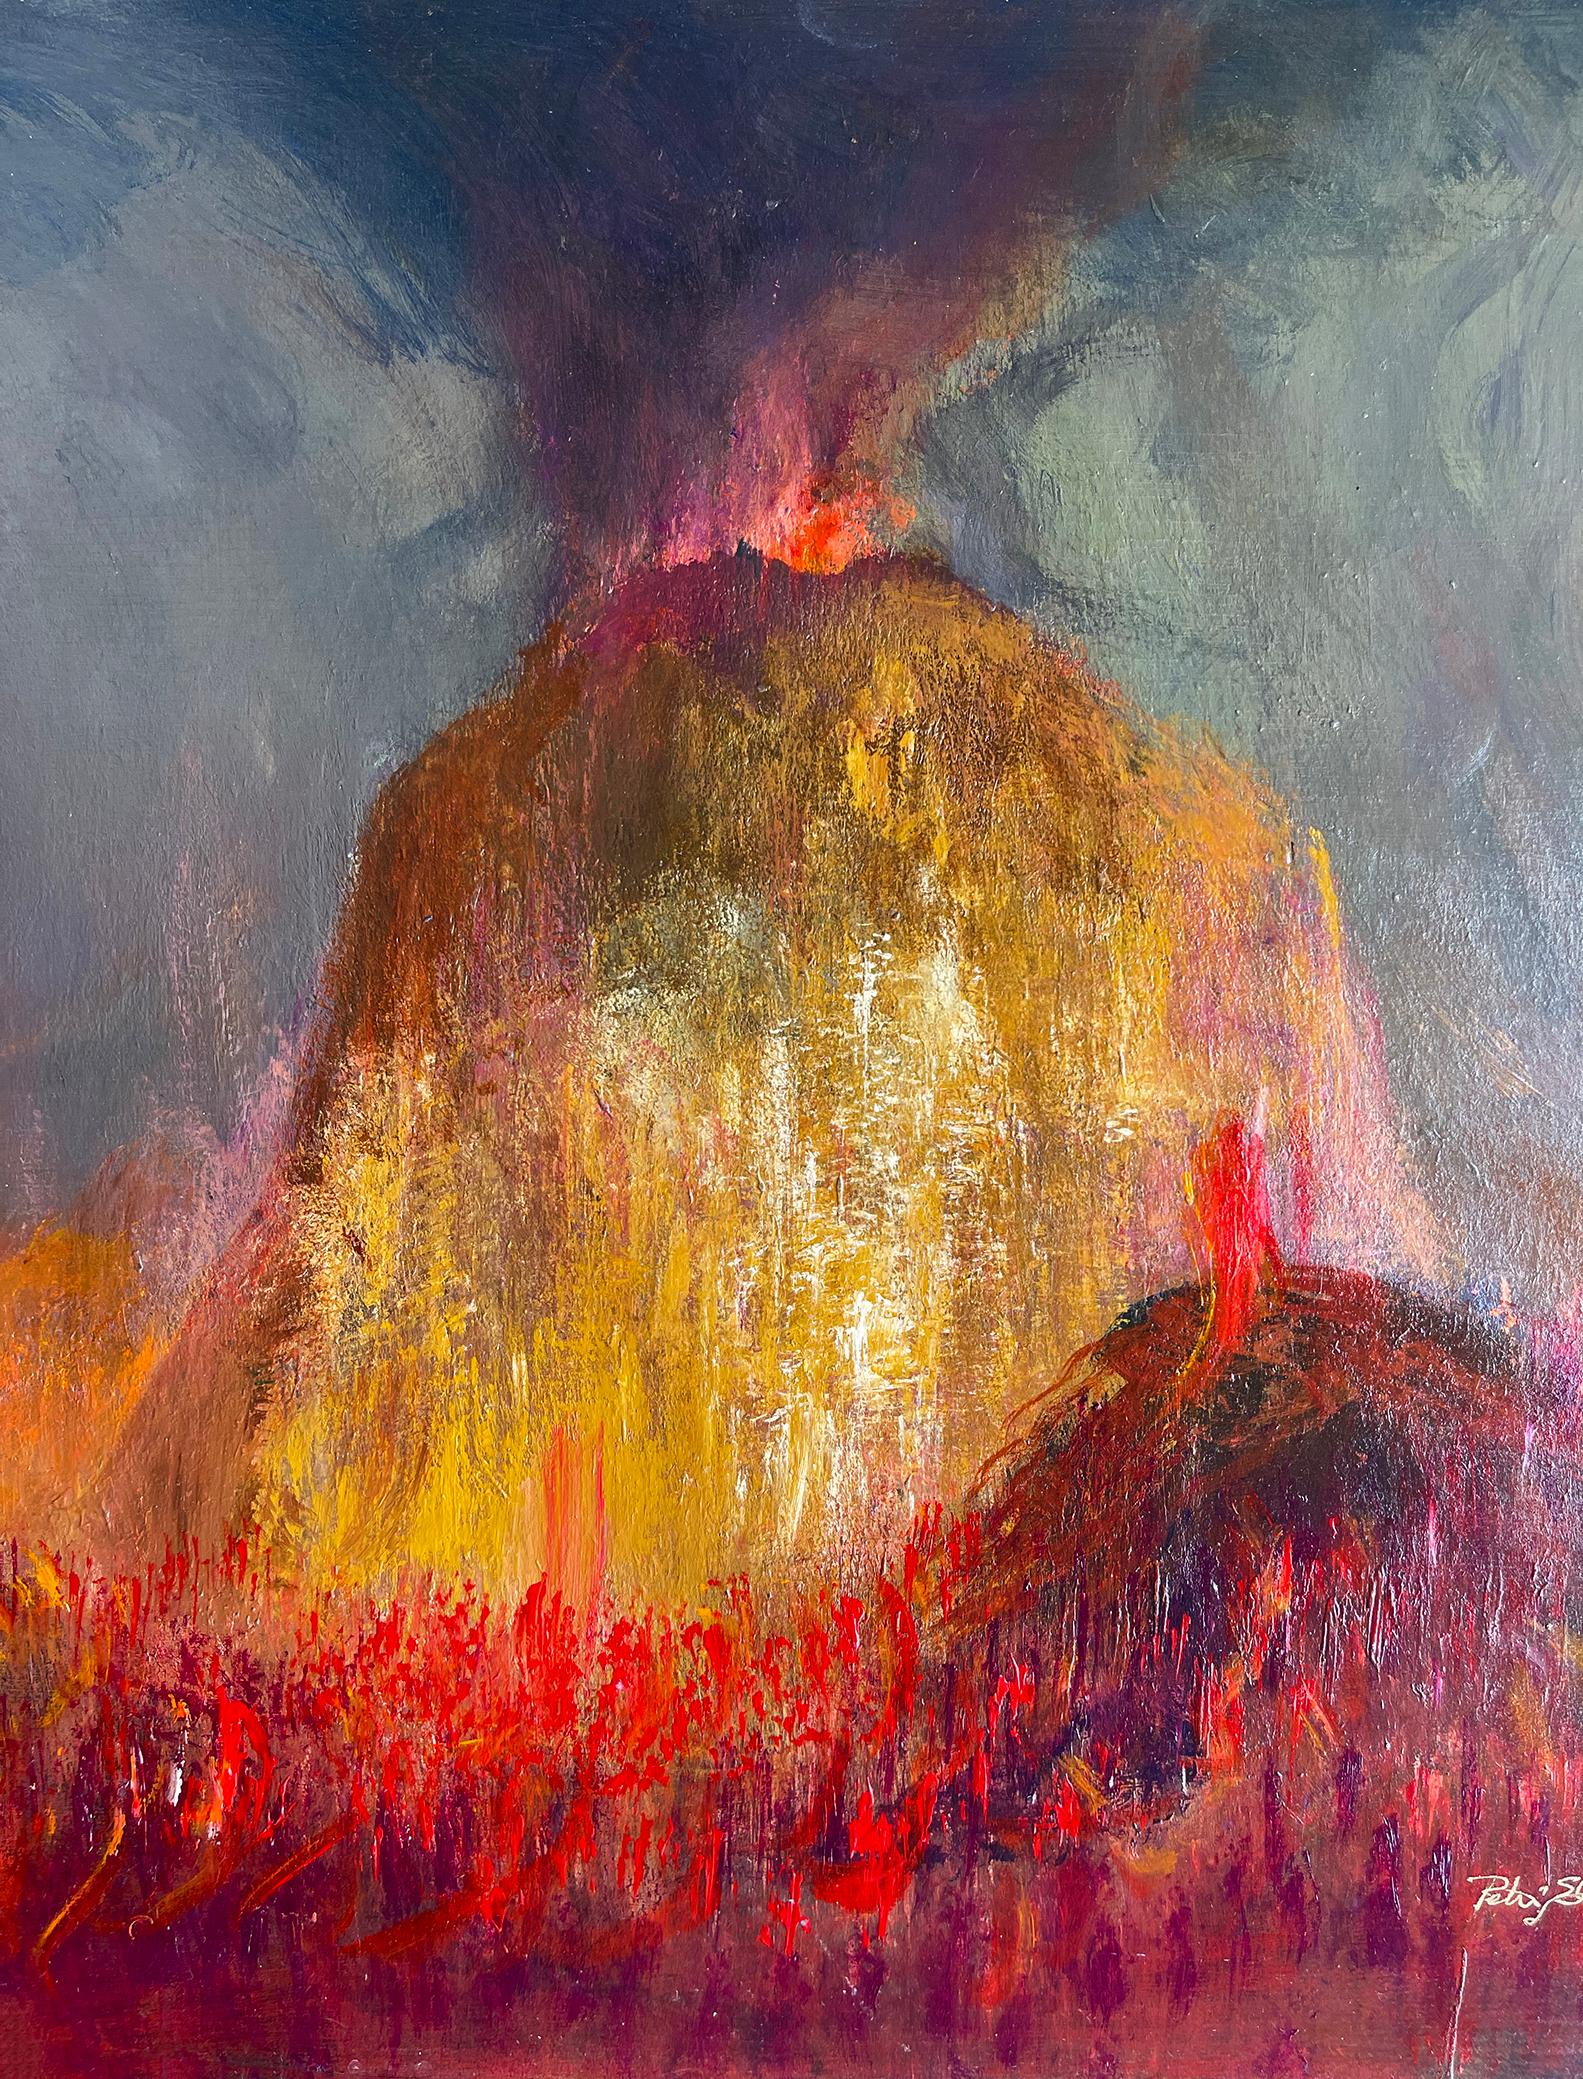 Volcano-Eruption – Explosive Fire Lava-Flow from Hell (Braun), Landscape Painting, von Peter Ellenshaw